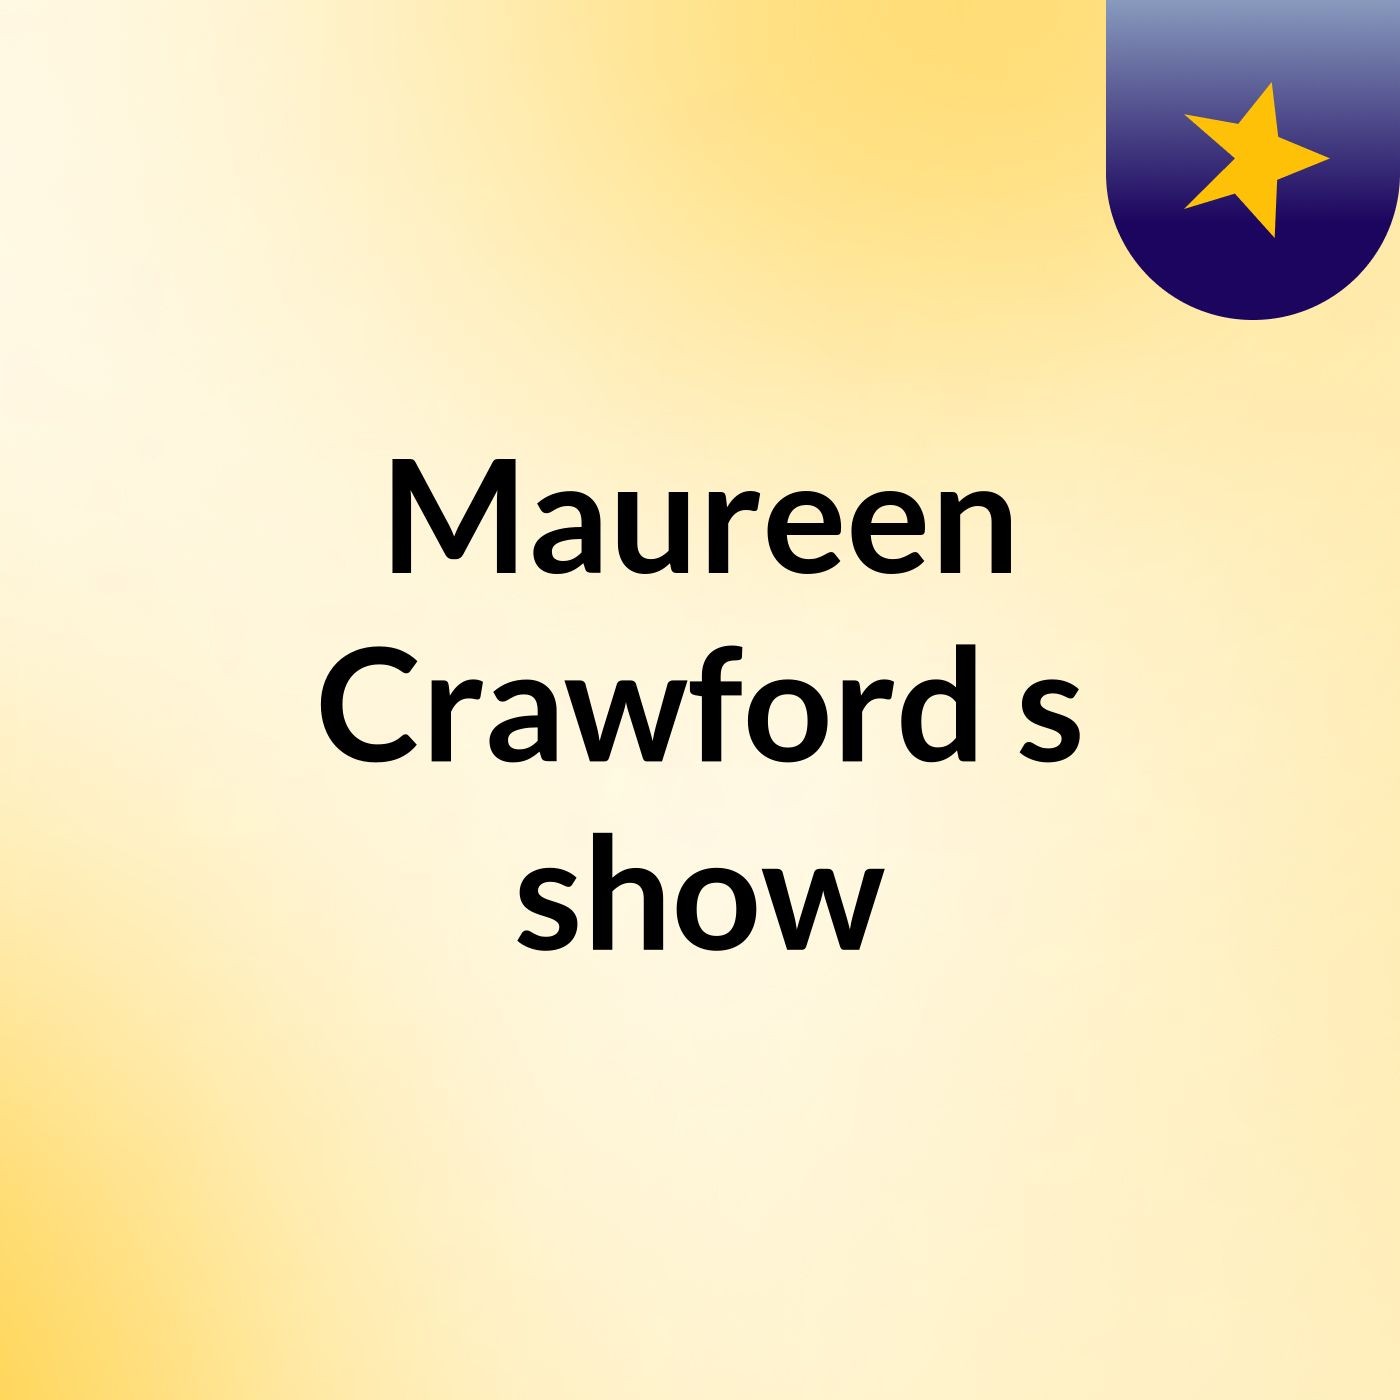 Maureen Crawford's show